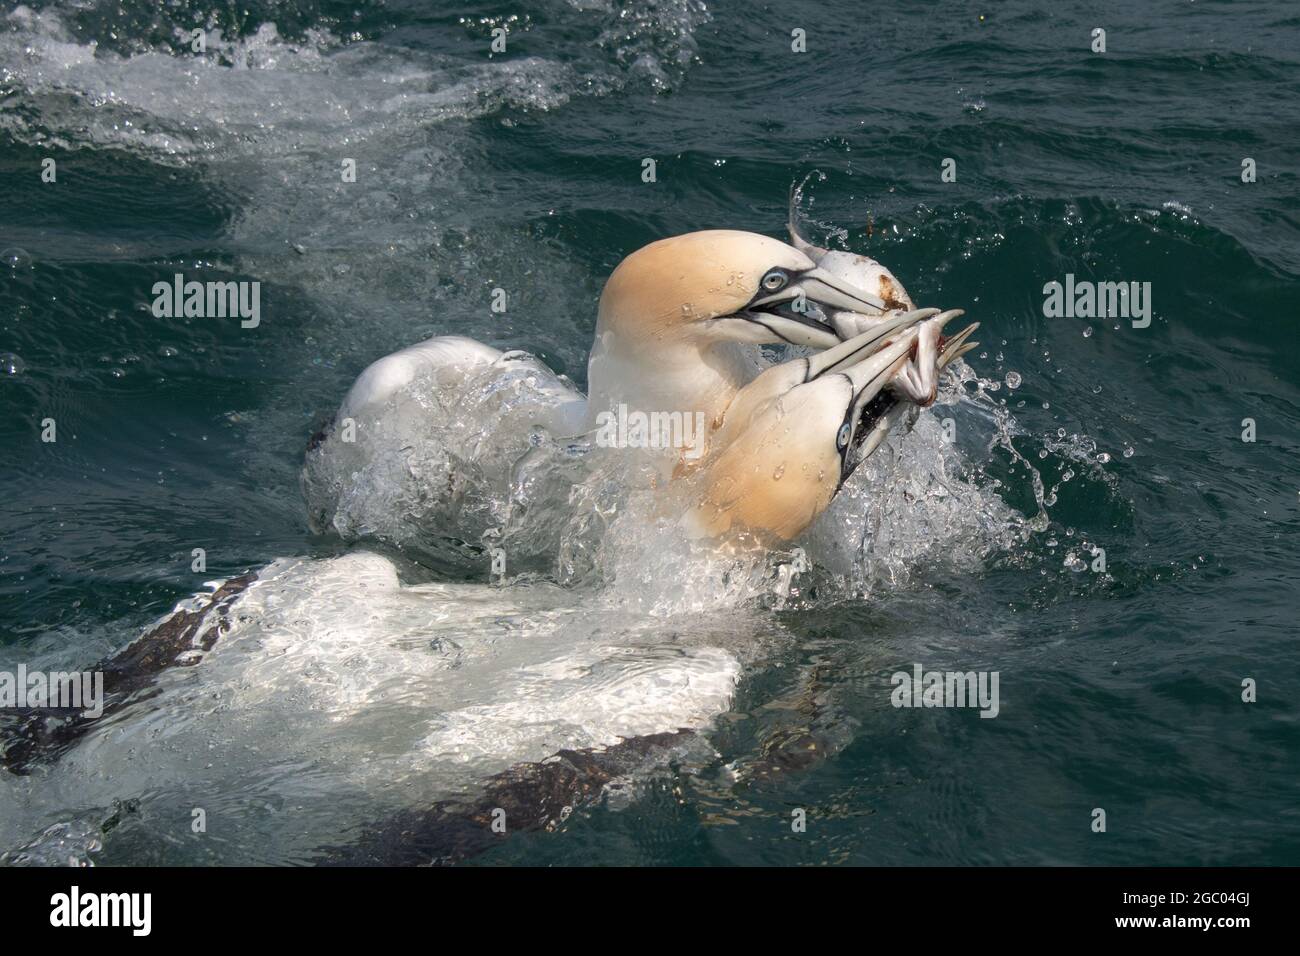 primo piano azione fotografia di tre diving gannets tutti dopo lo stesso pesce. Tutti hanno i loro becchi sul pesce mentre escono dall'acqua Foto Stock